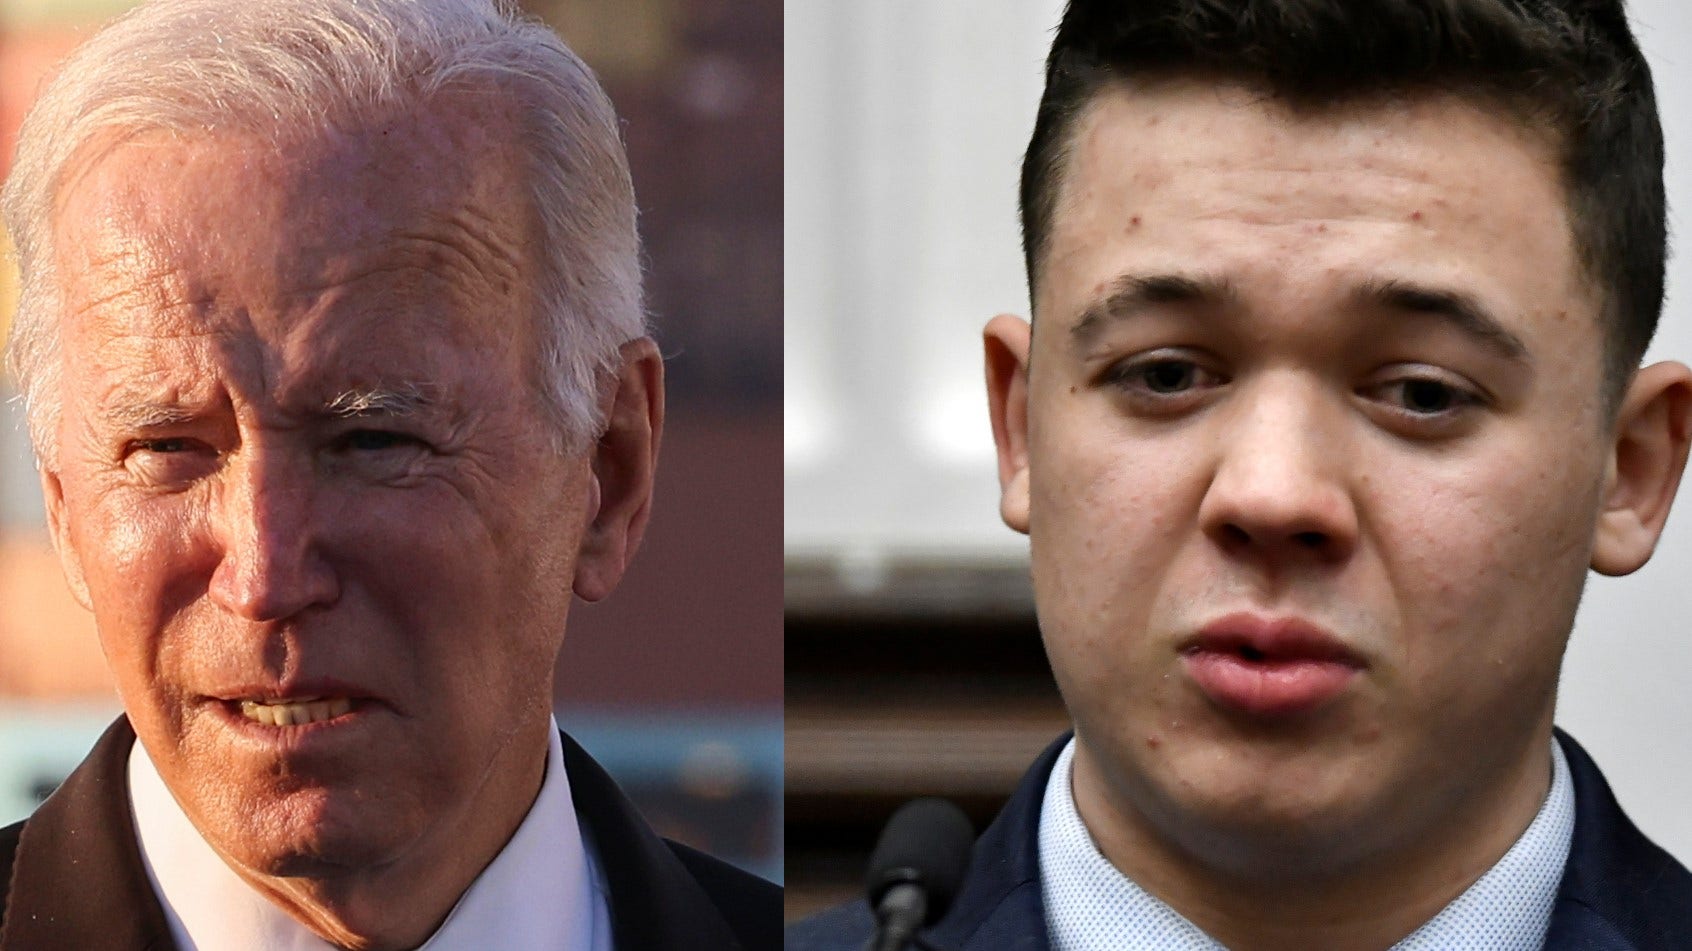 Kyle Rittenhouse spokesperson slams Joe Biden for casting defendant as a White supremacist